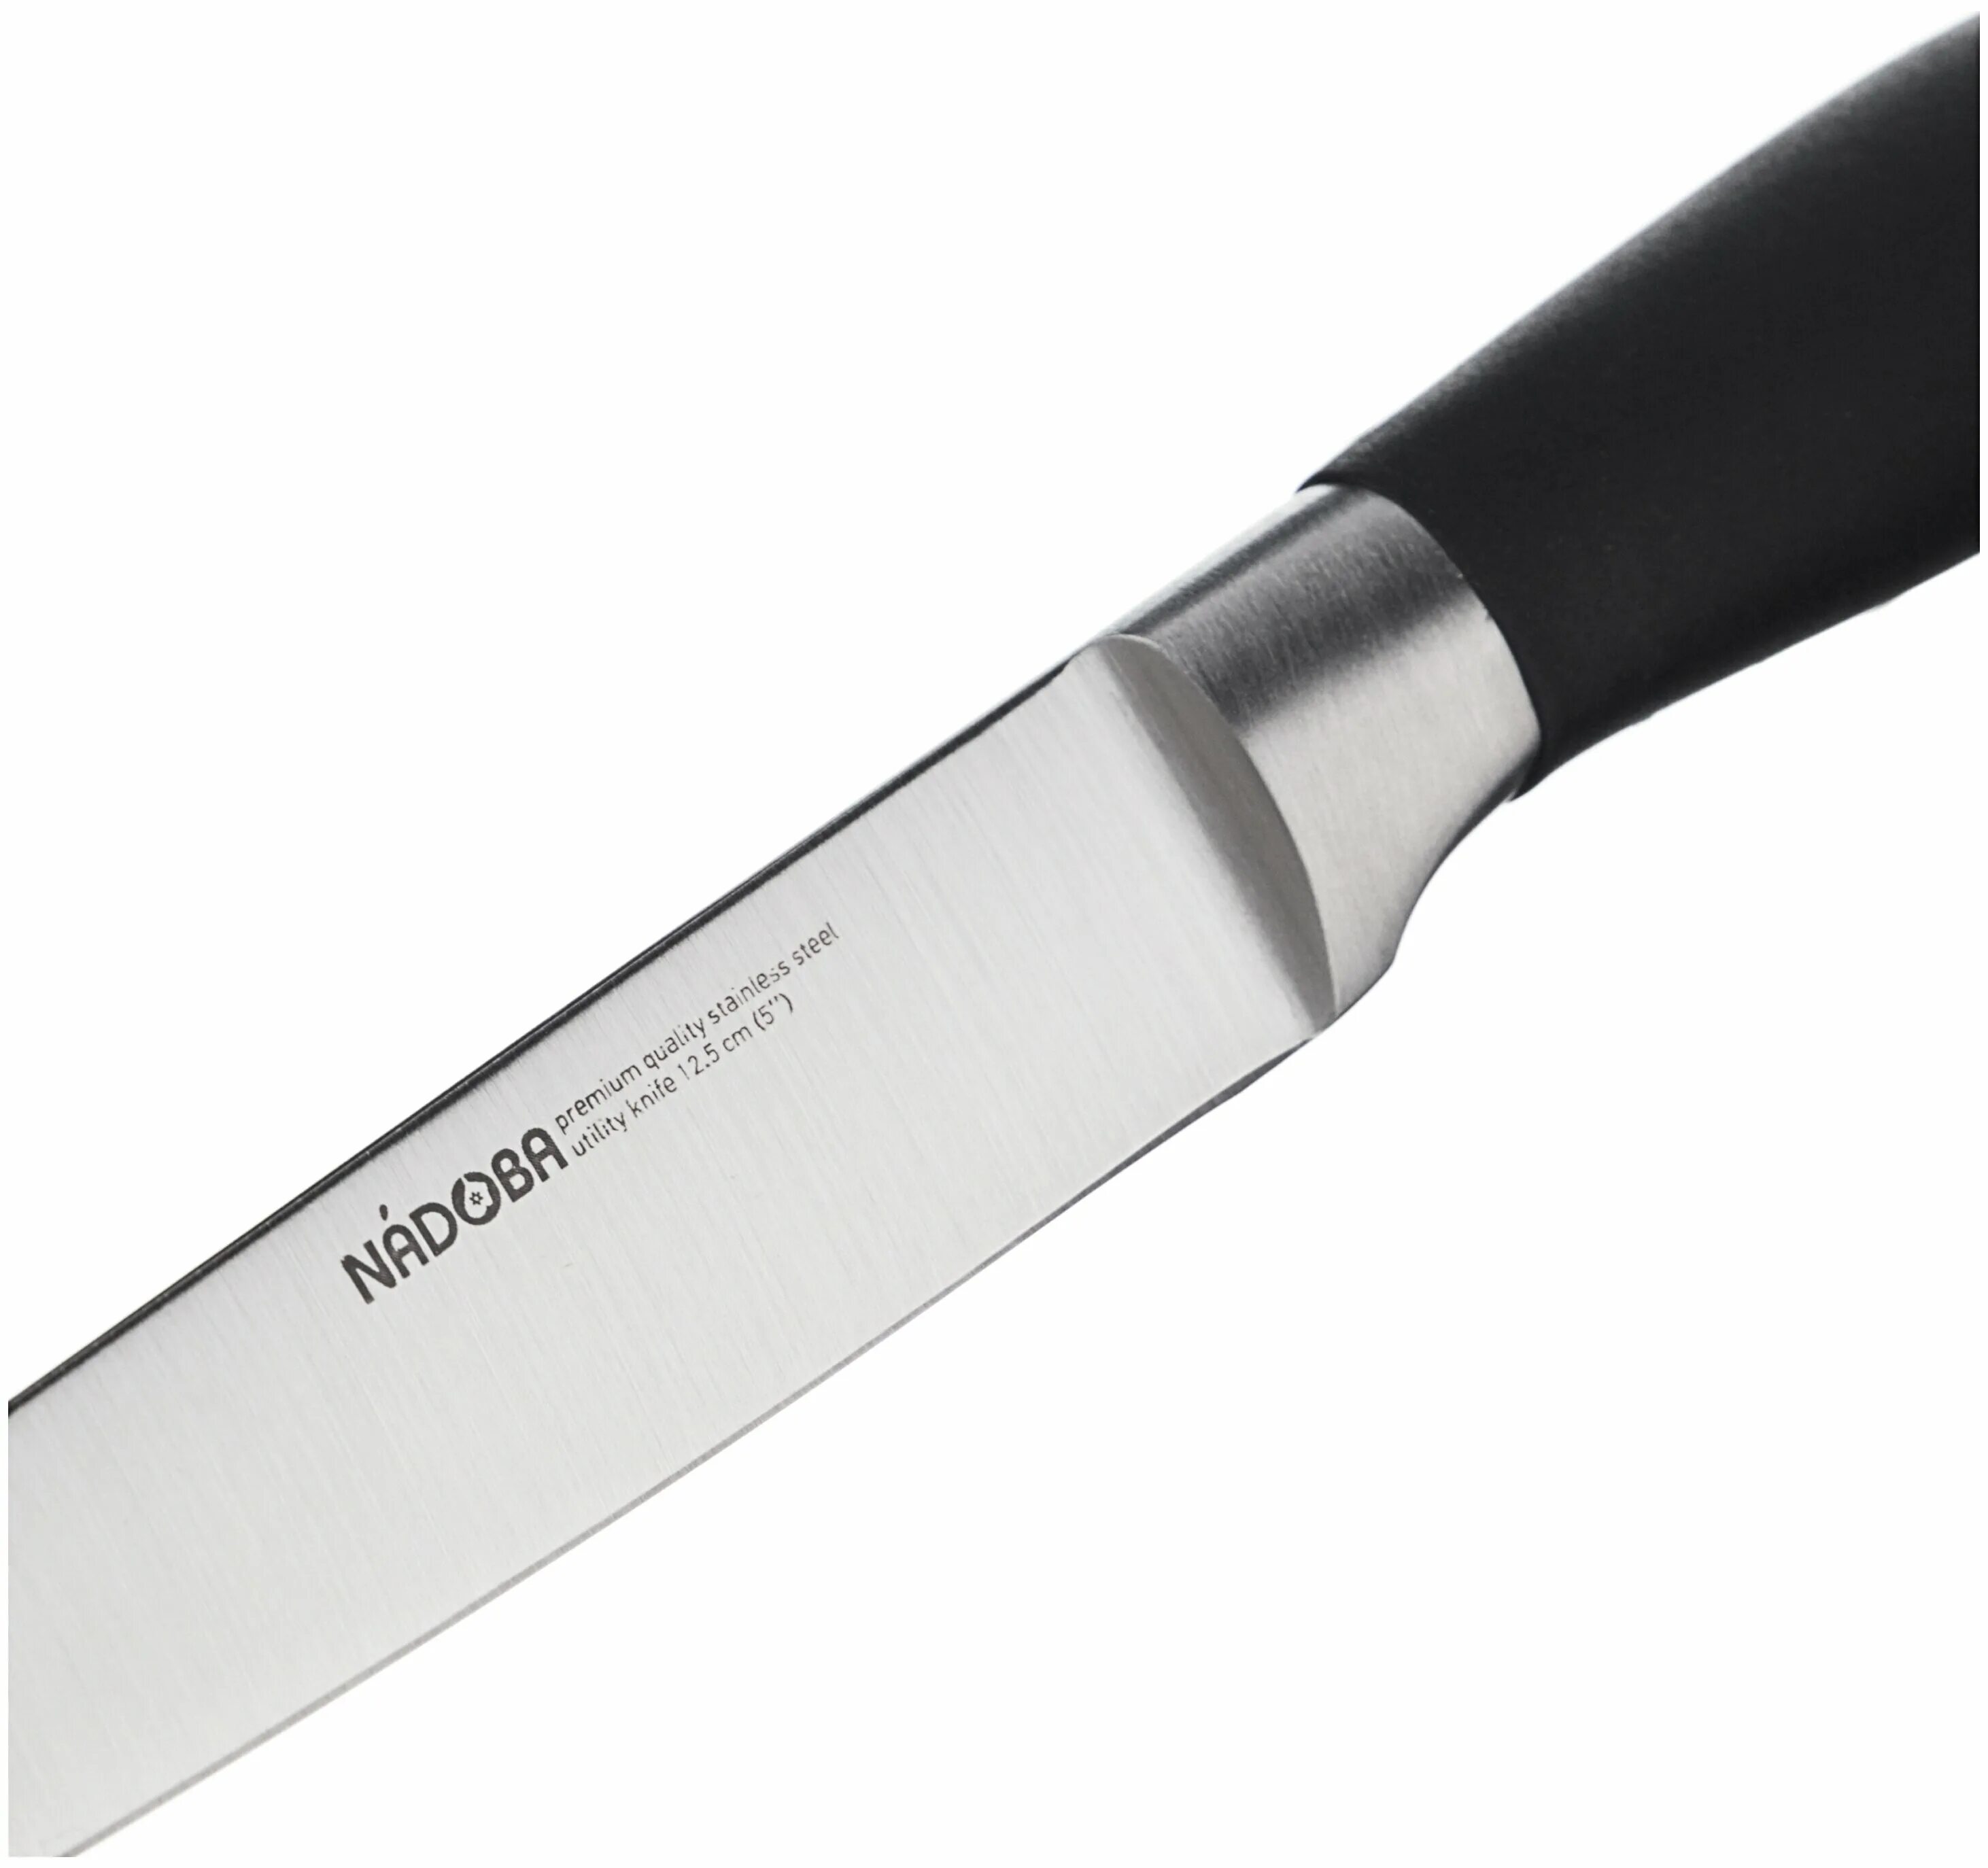 Купить нож отзывы. Nadoba rut ножи. Нож универсальный, 13 см, Nadoba, Keiko. , нерж.сталь. Nadoba rut 722711. Nadoba rut (722712).